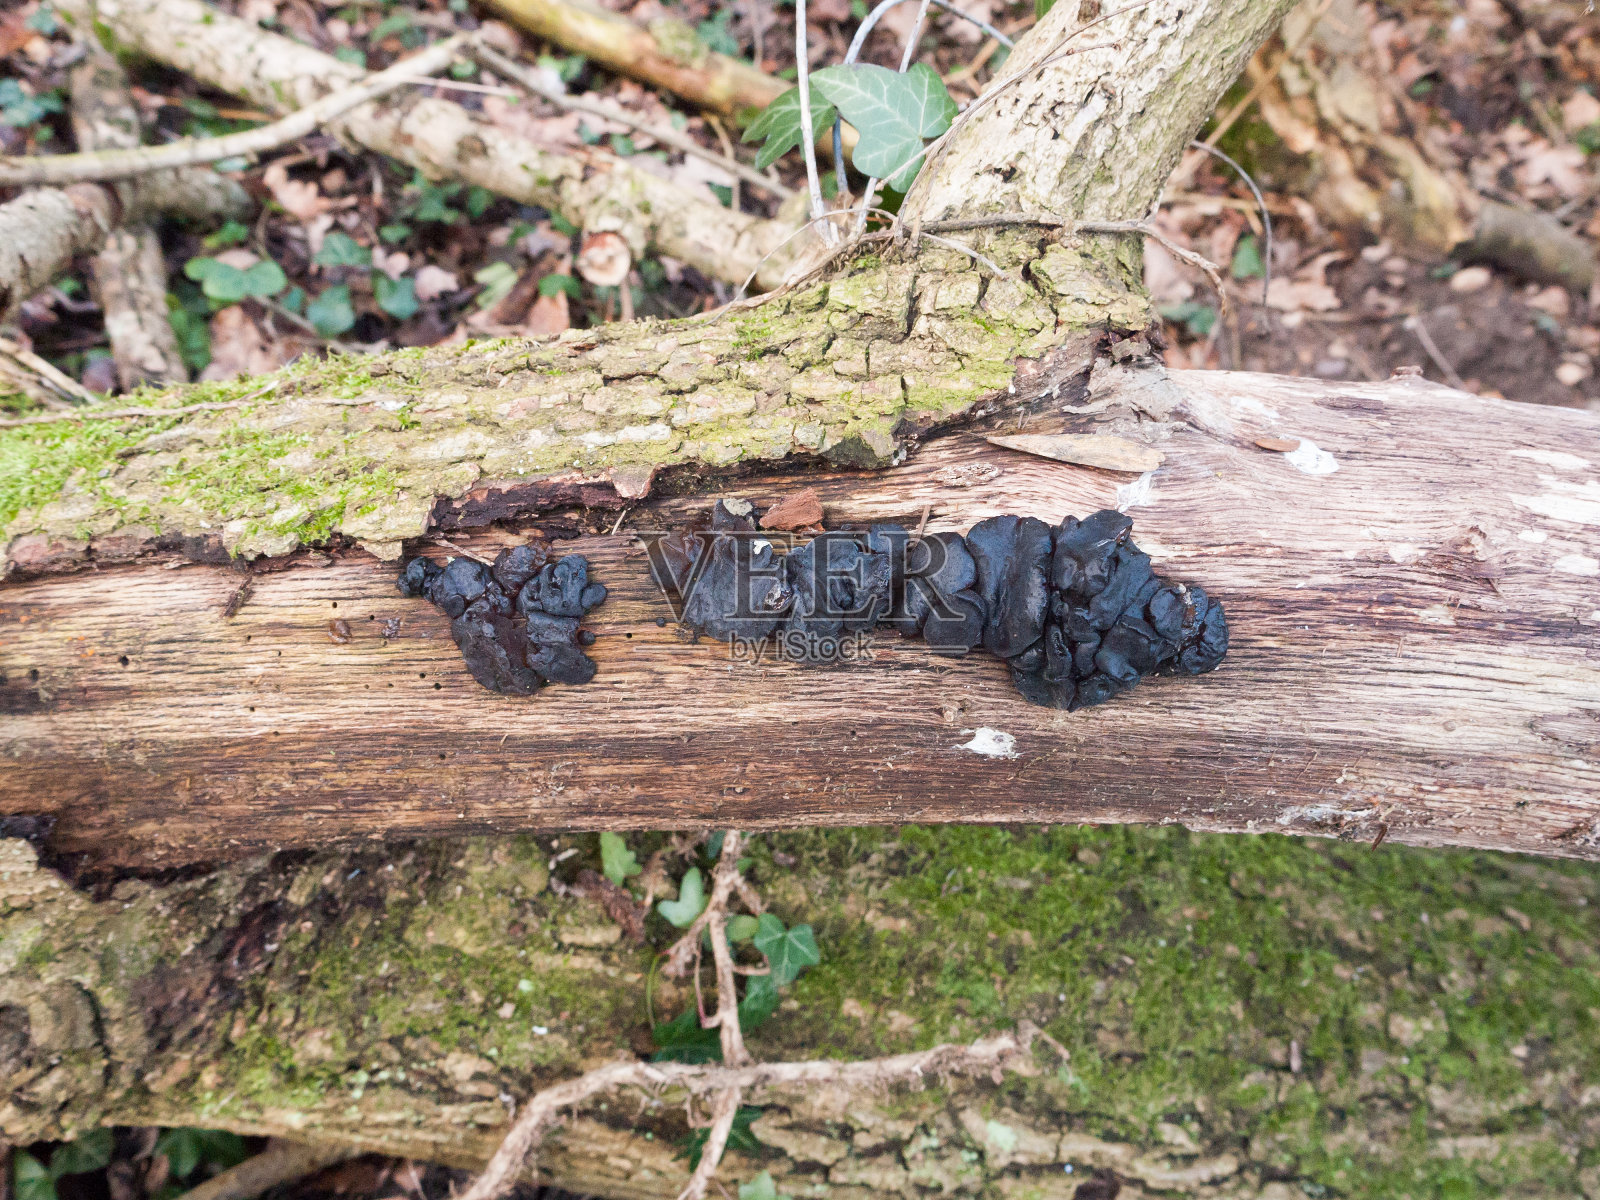 靠近黑色的果冻真菌树枝- Exidia plana Donk照片摄影图片